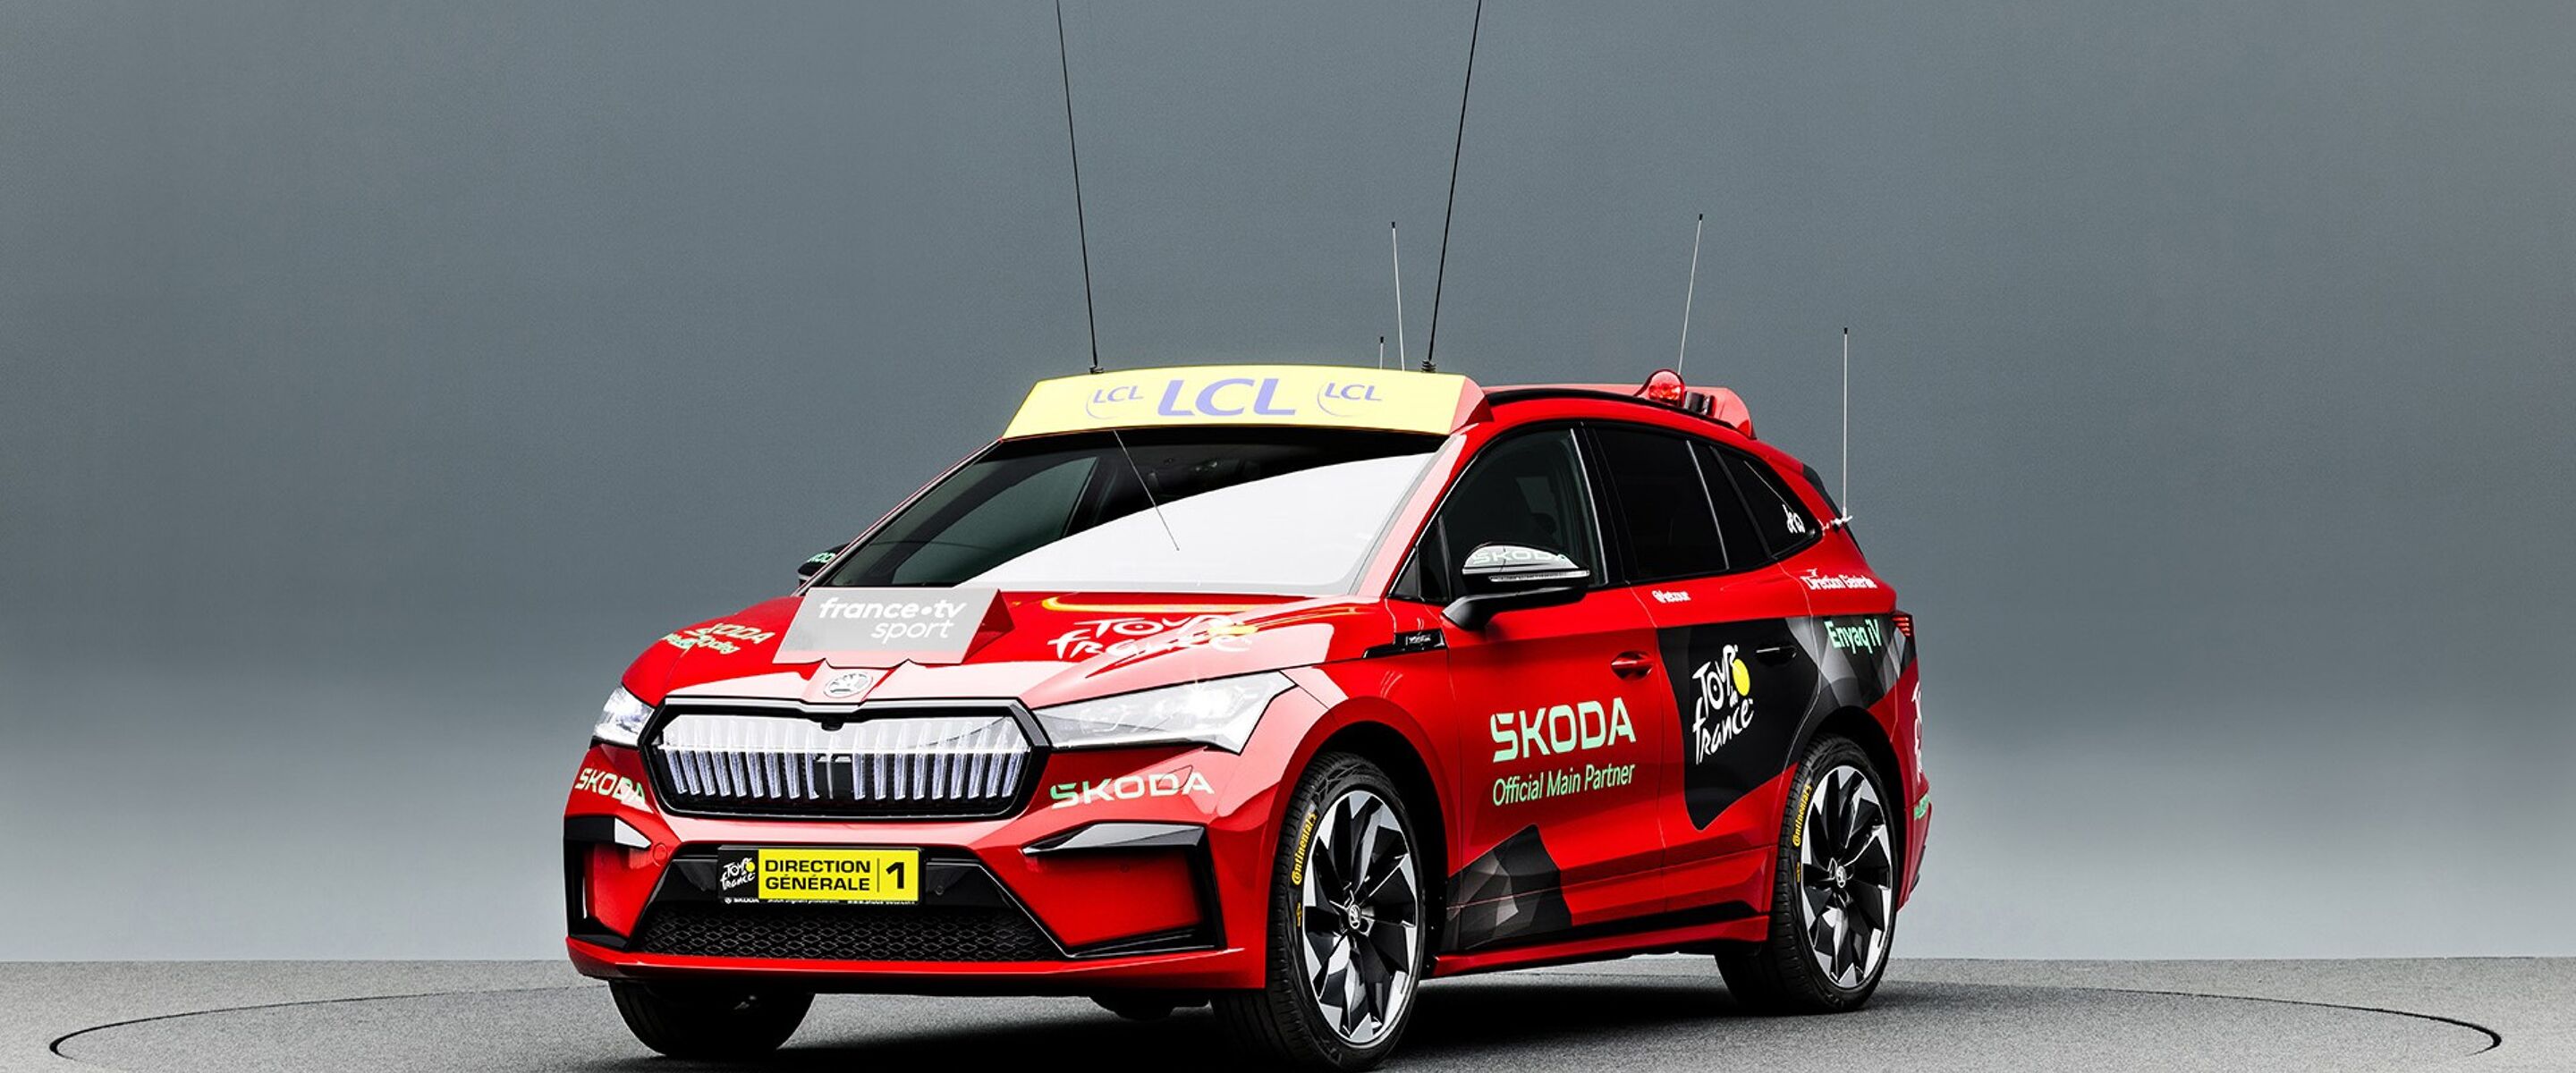 E-mobility is het thema bij het 20 jaar partnerschap van Škoda en Tour de France